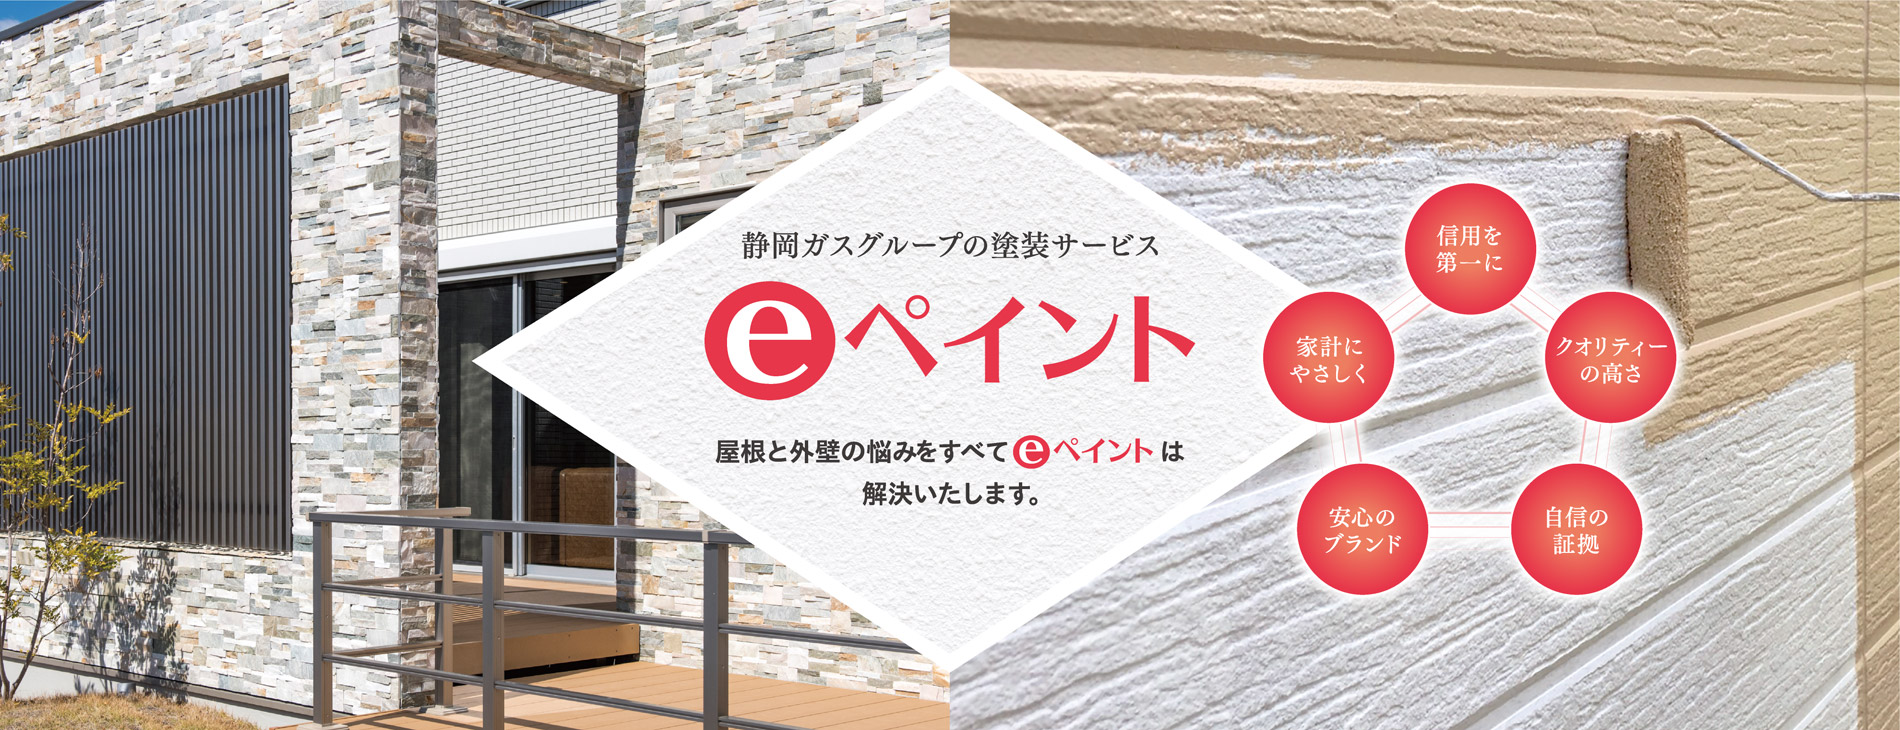 静岡ガスグループの塗装サービス「eペイント」屋根と外壁の悩みをすべてeペイントは解決いたします。